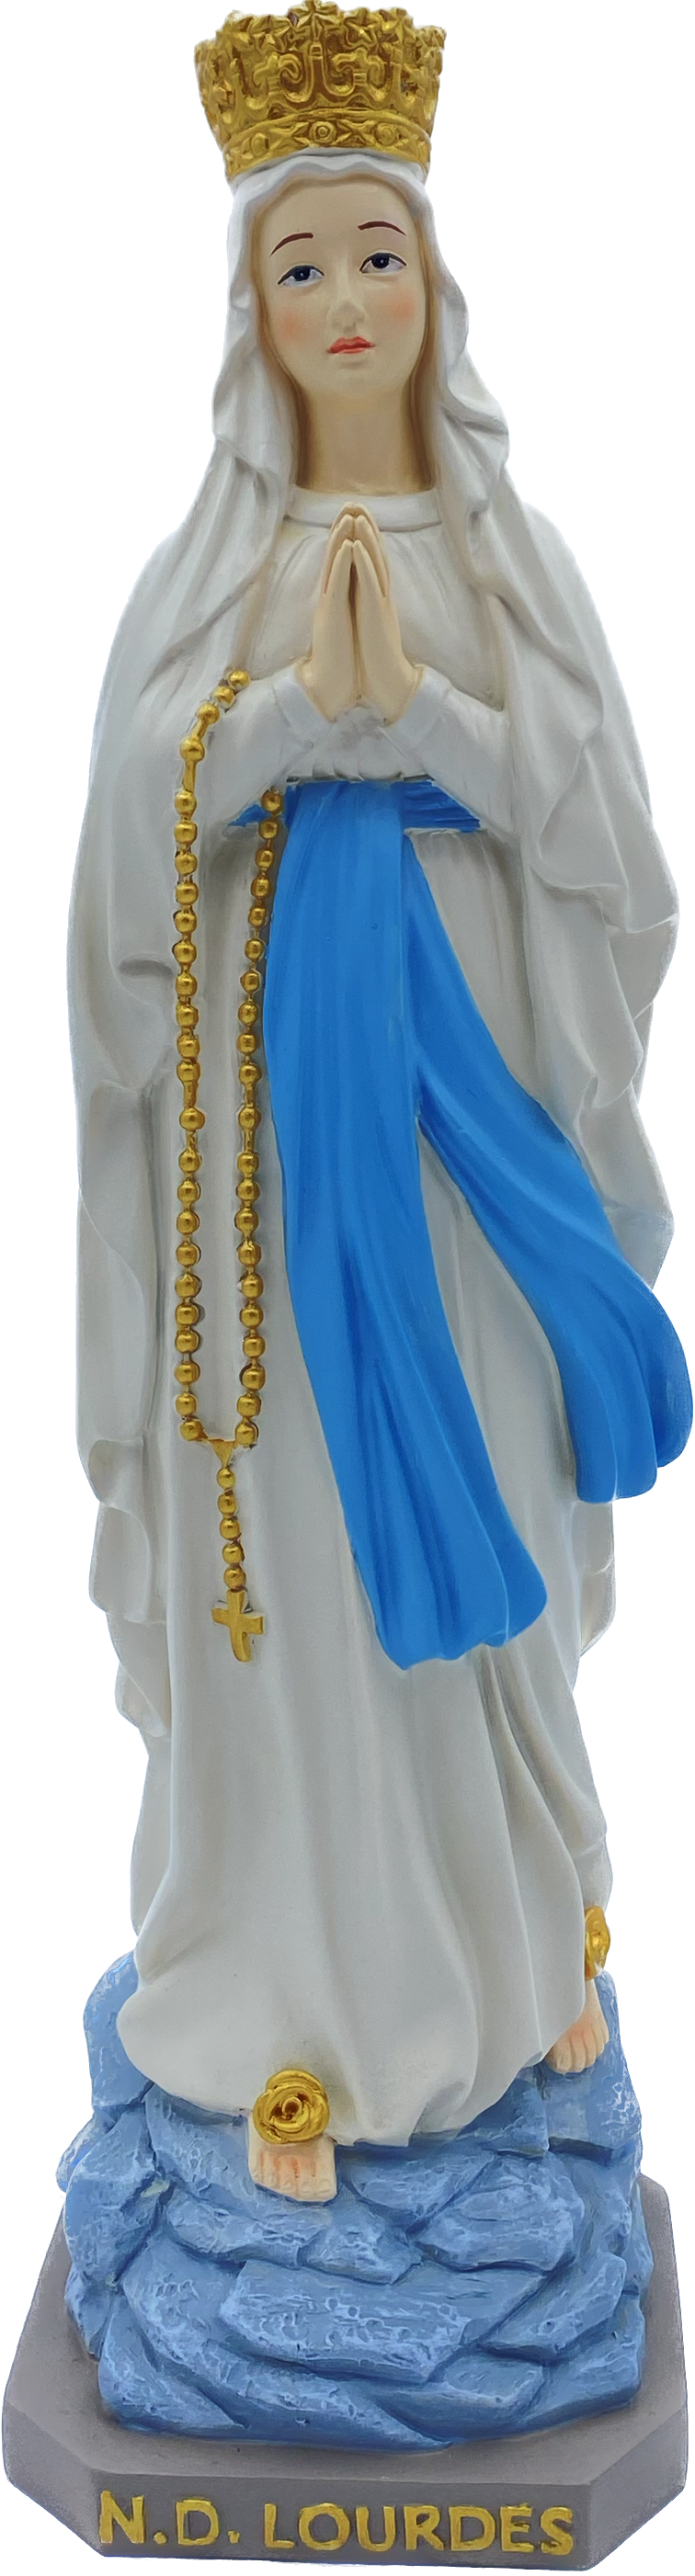 カラー樹脂製の冠をかぶった聖母像 10 cm